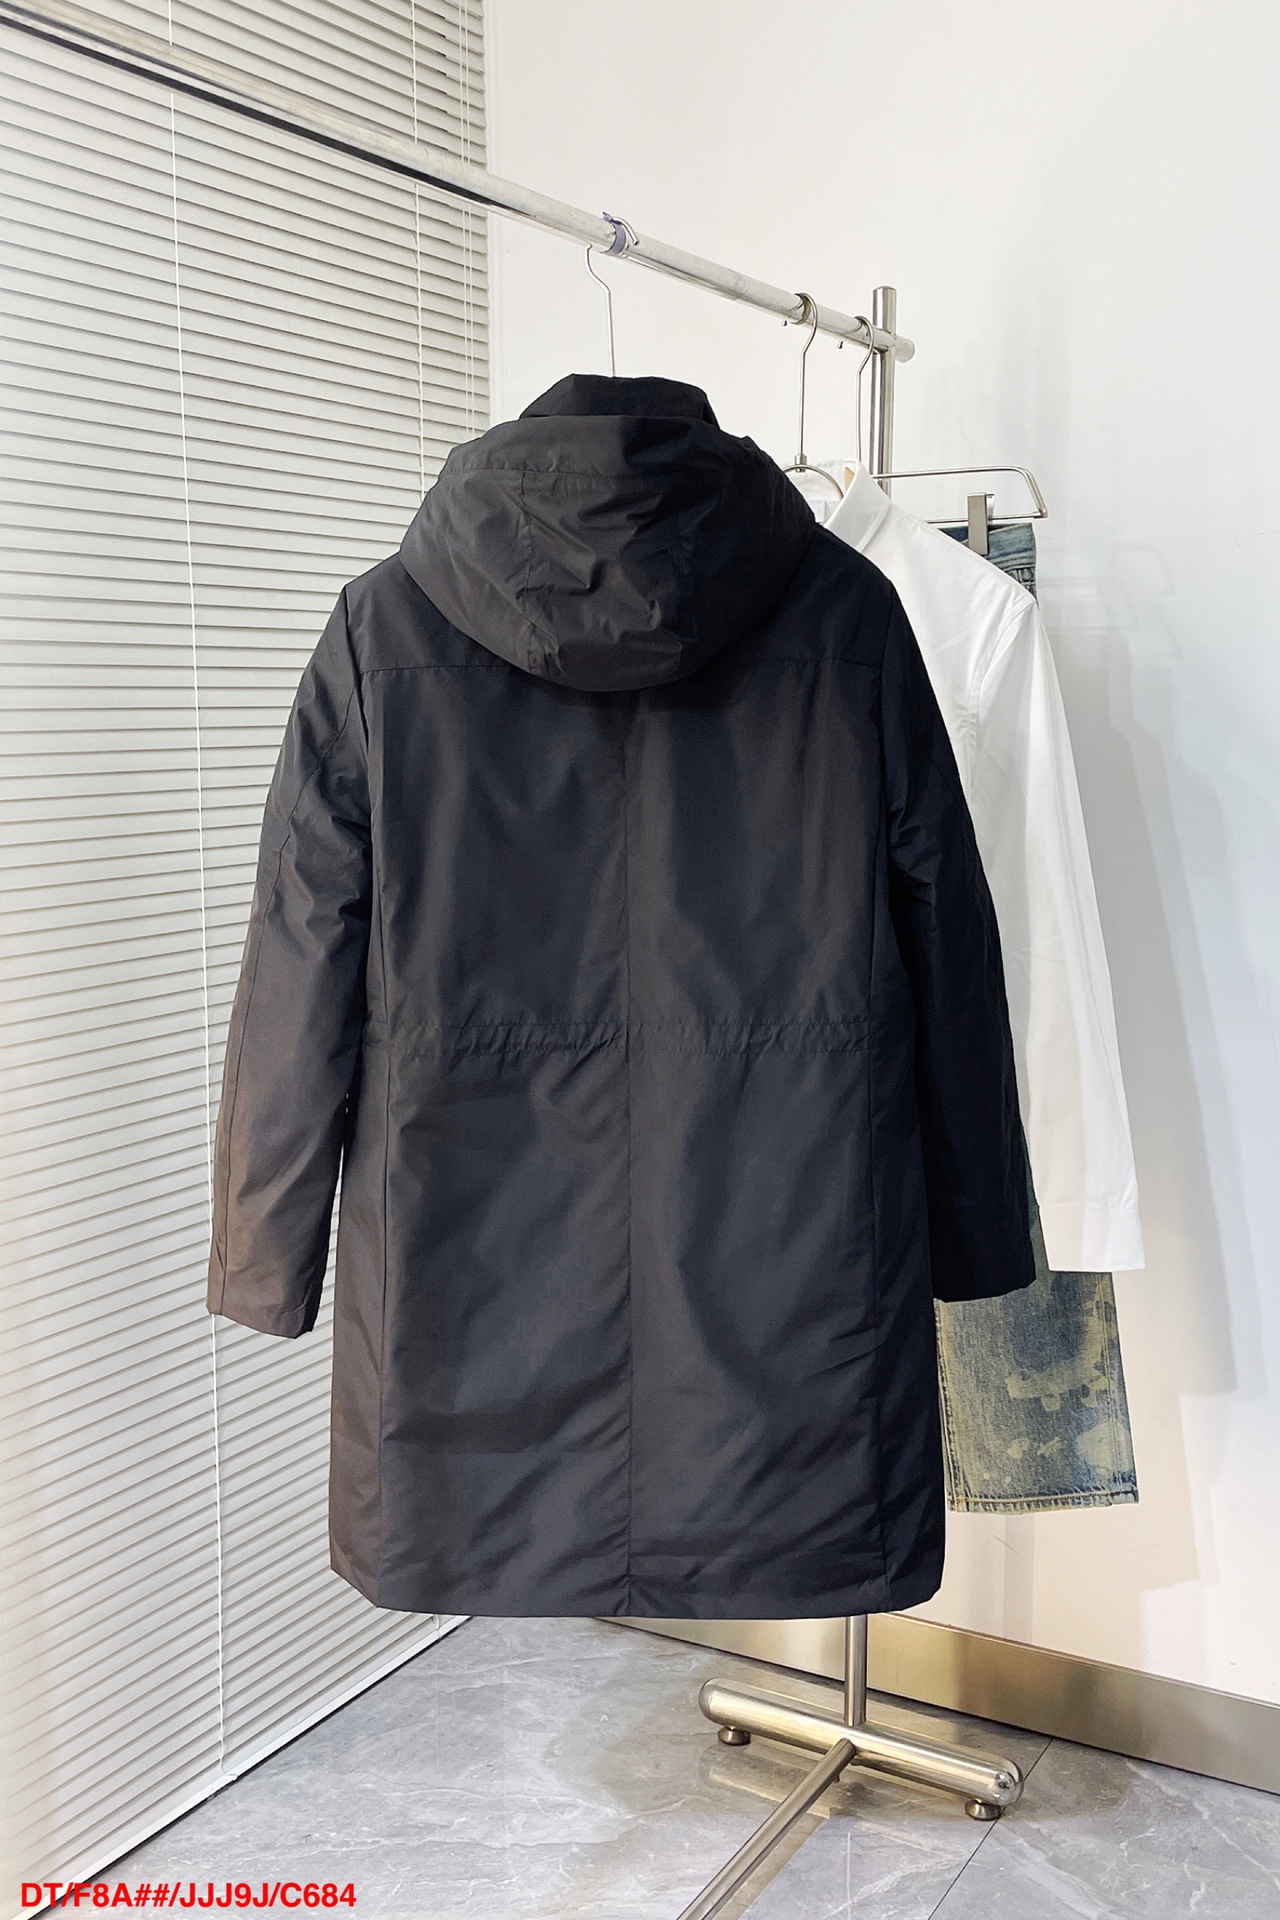 デサント ジャケット セットアップスーパーコピー ファッション 快適 ダウン ロング 暖かい ブラック_3